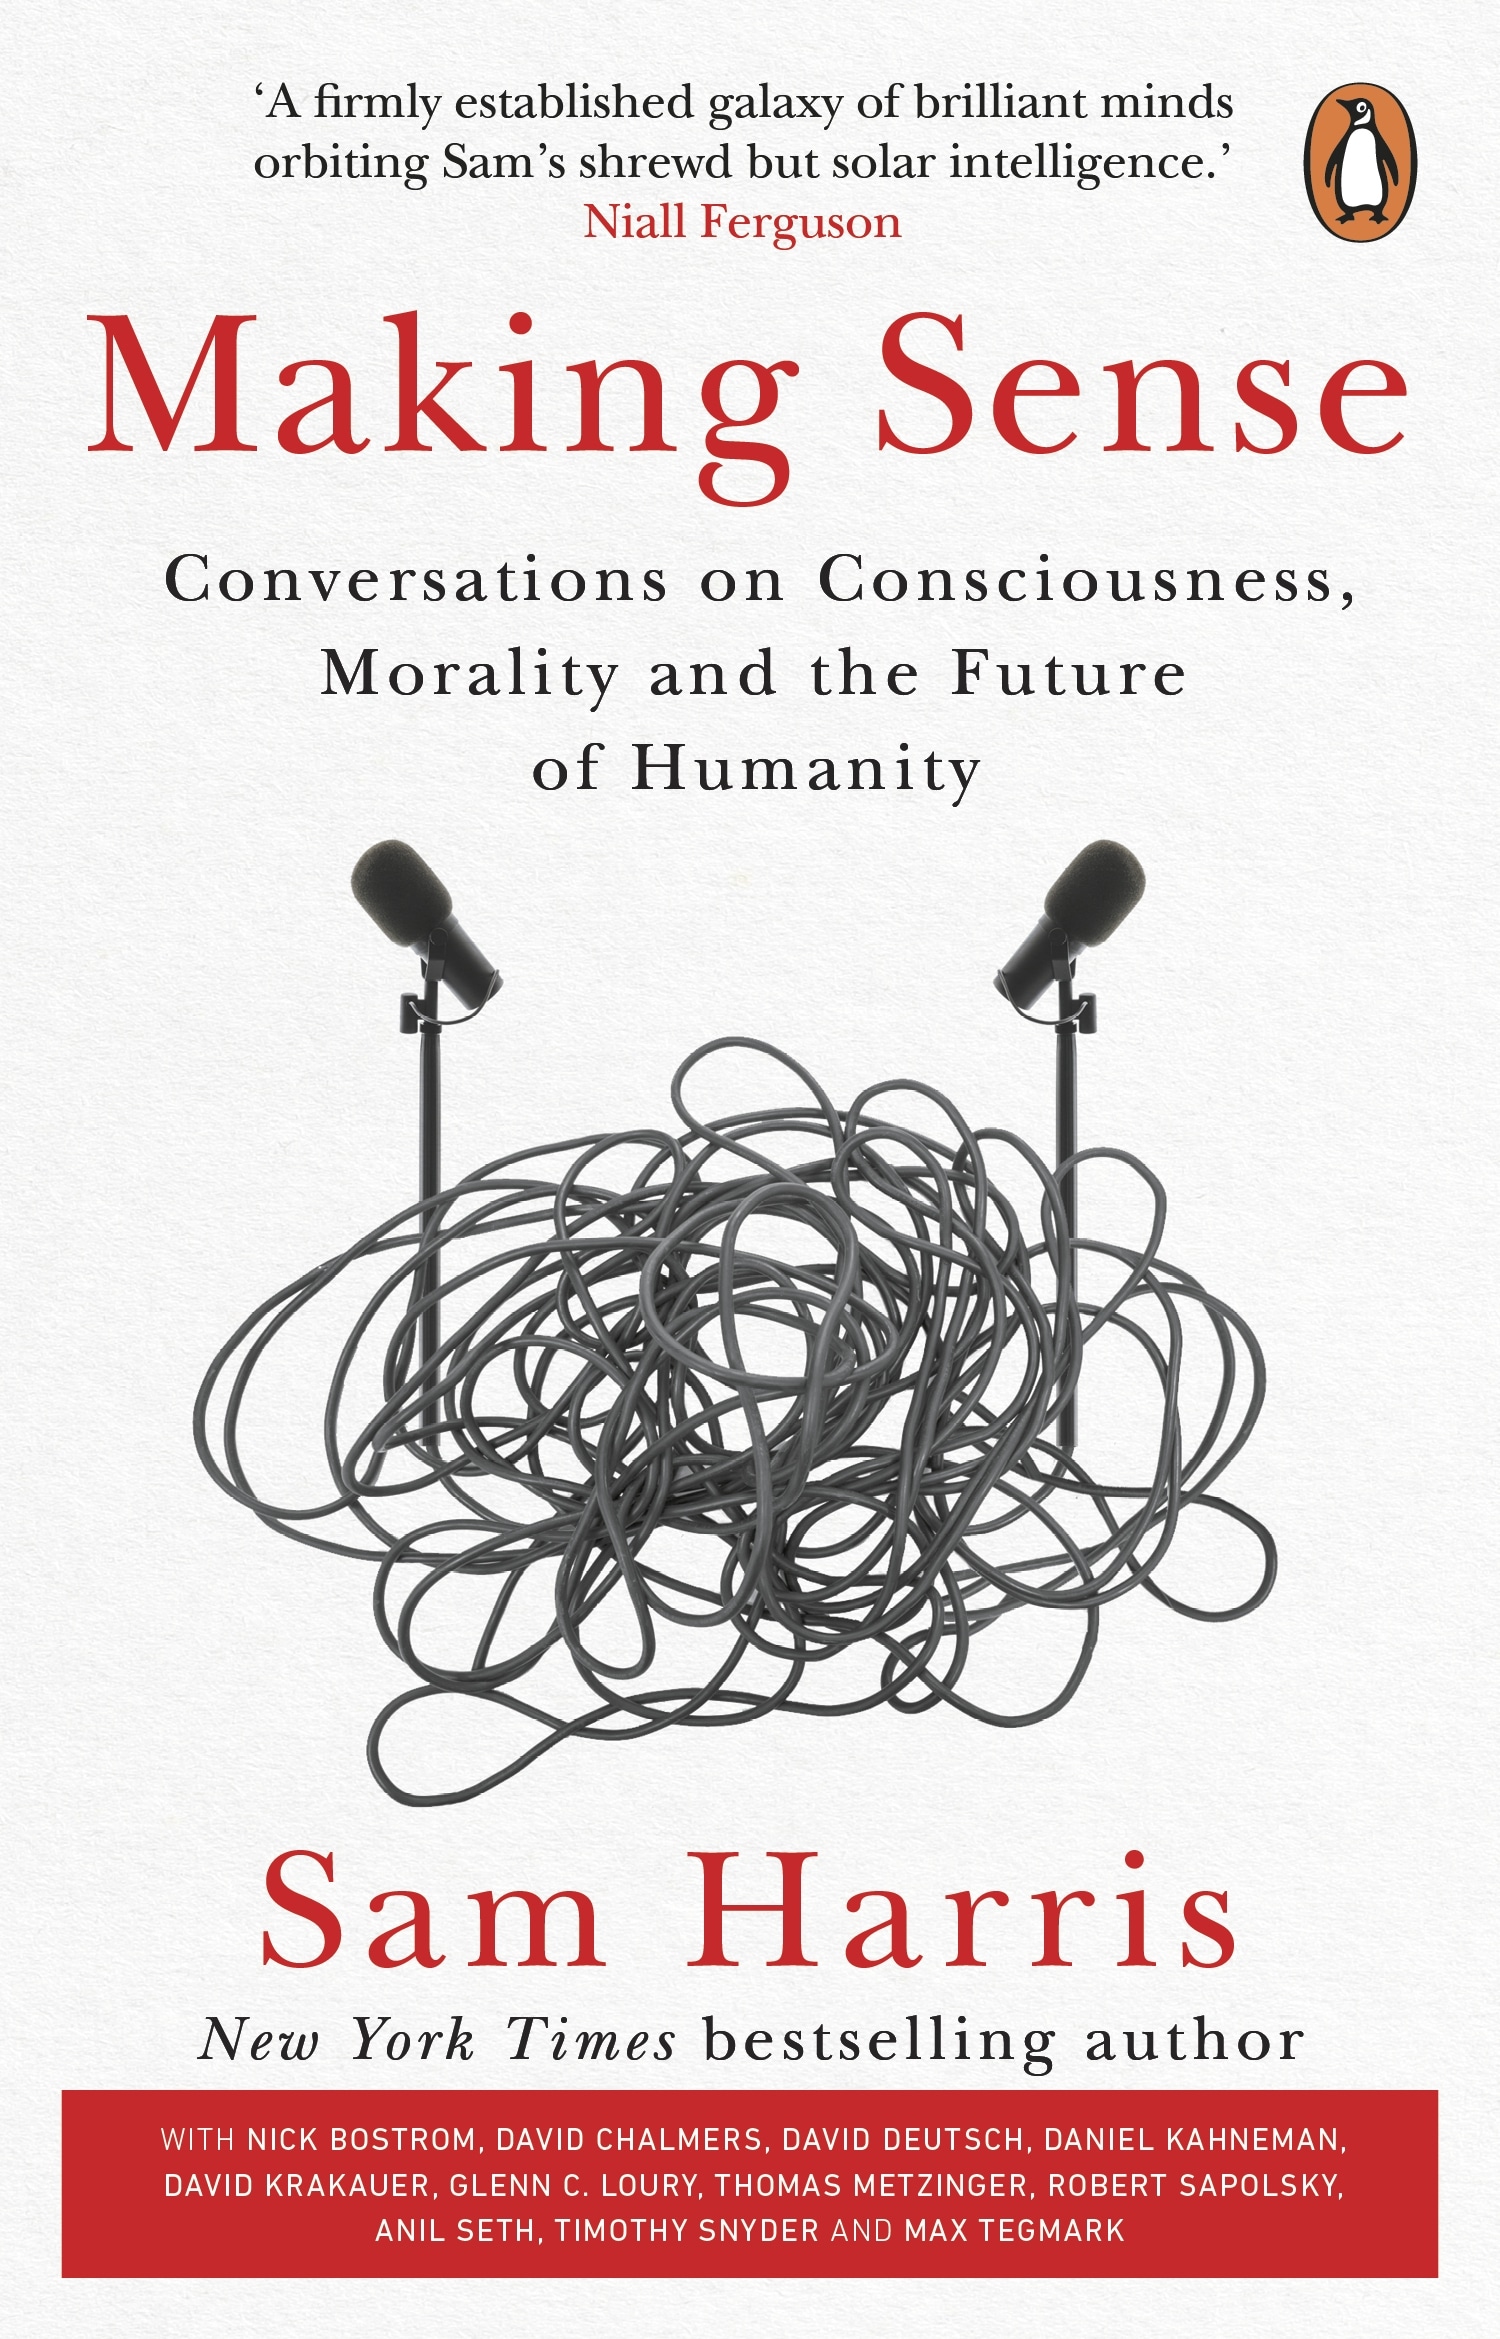 Book “Making Sense” by Sam Harris — August 19, 2021